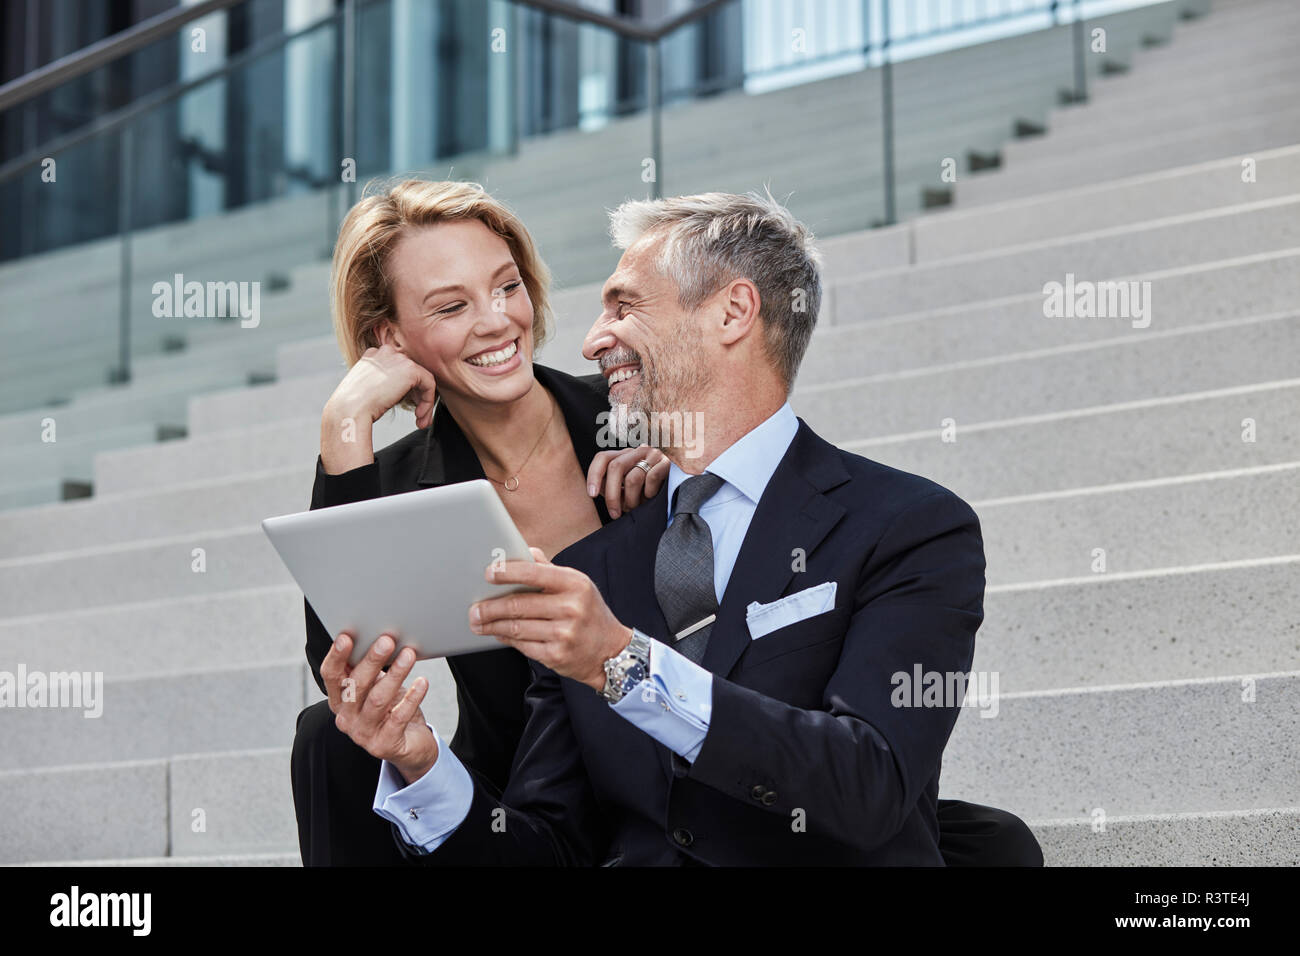 Portrait de deux de rire des gens d'affaires avec tablet assis ensemble sur des escaliers Banque D'Images